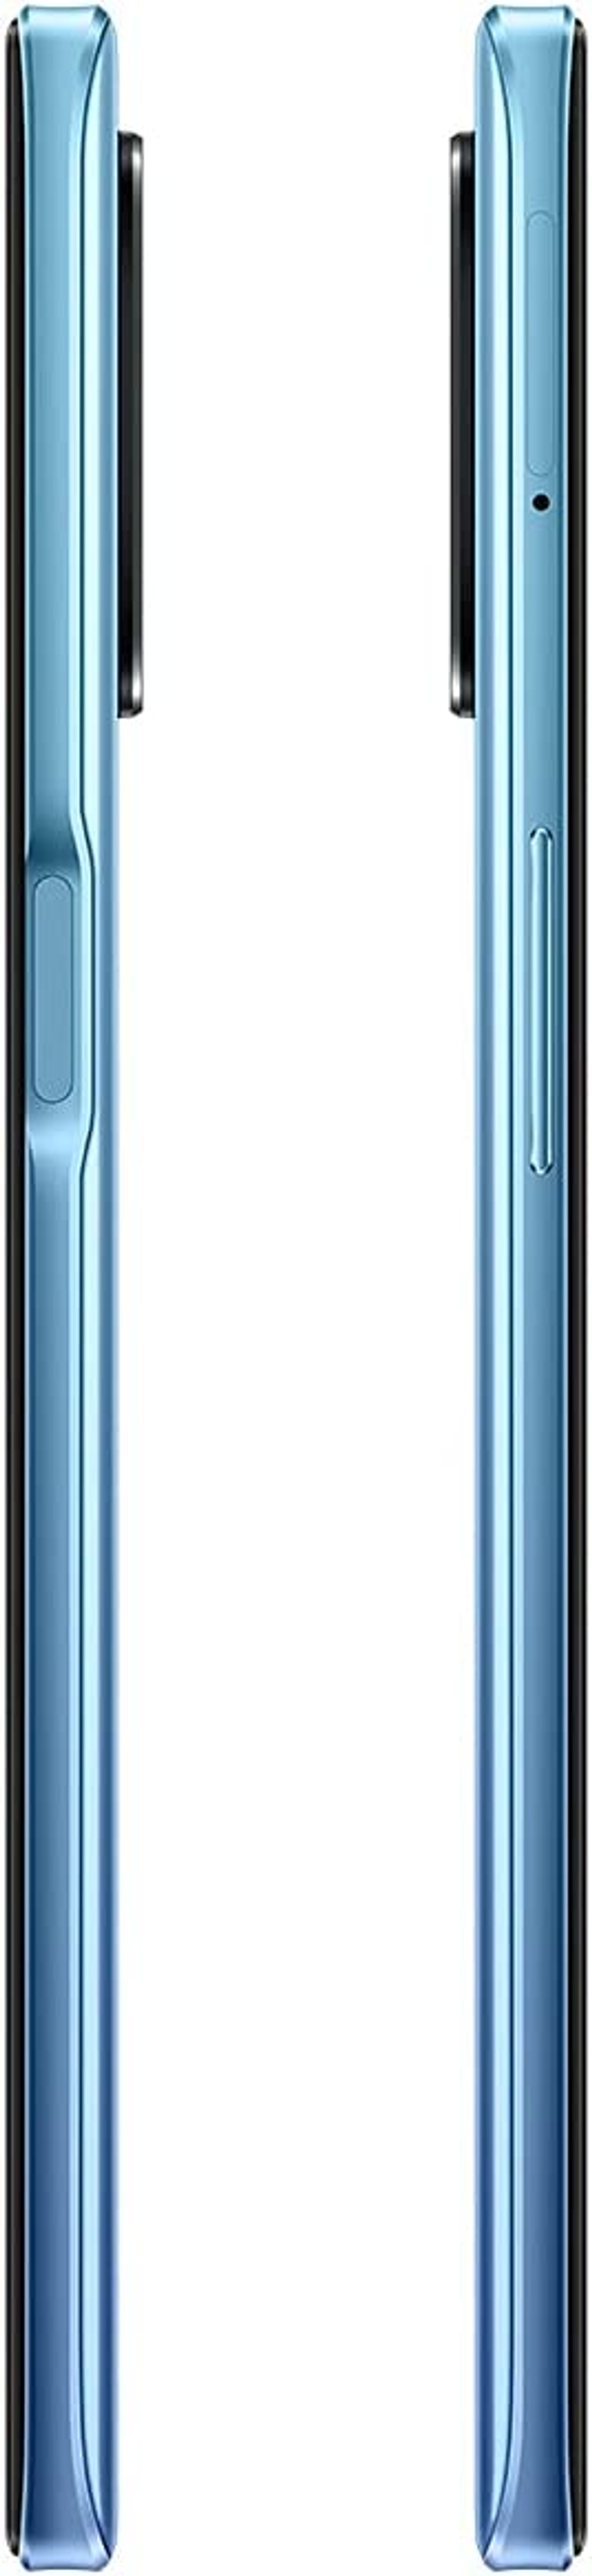 SIM 5G REALME Blau 8 64 Dual GB